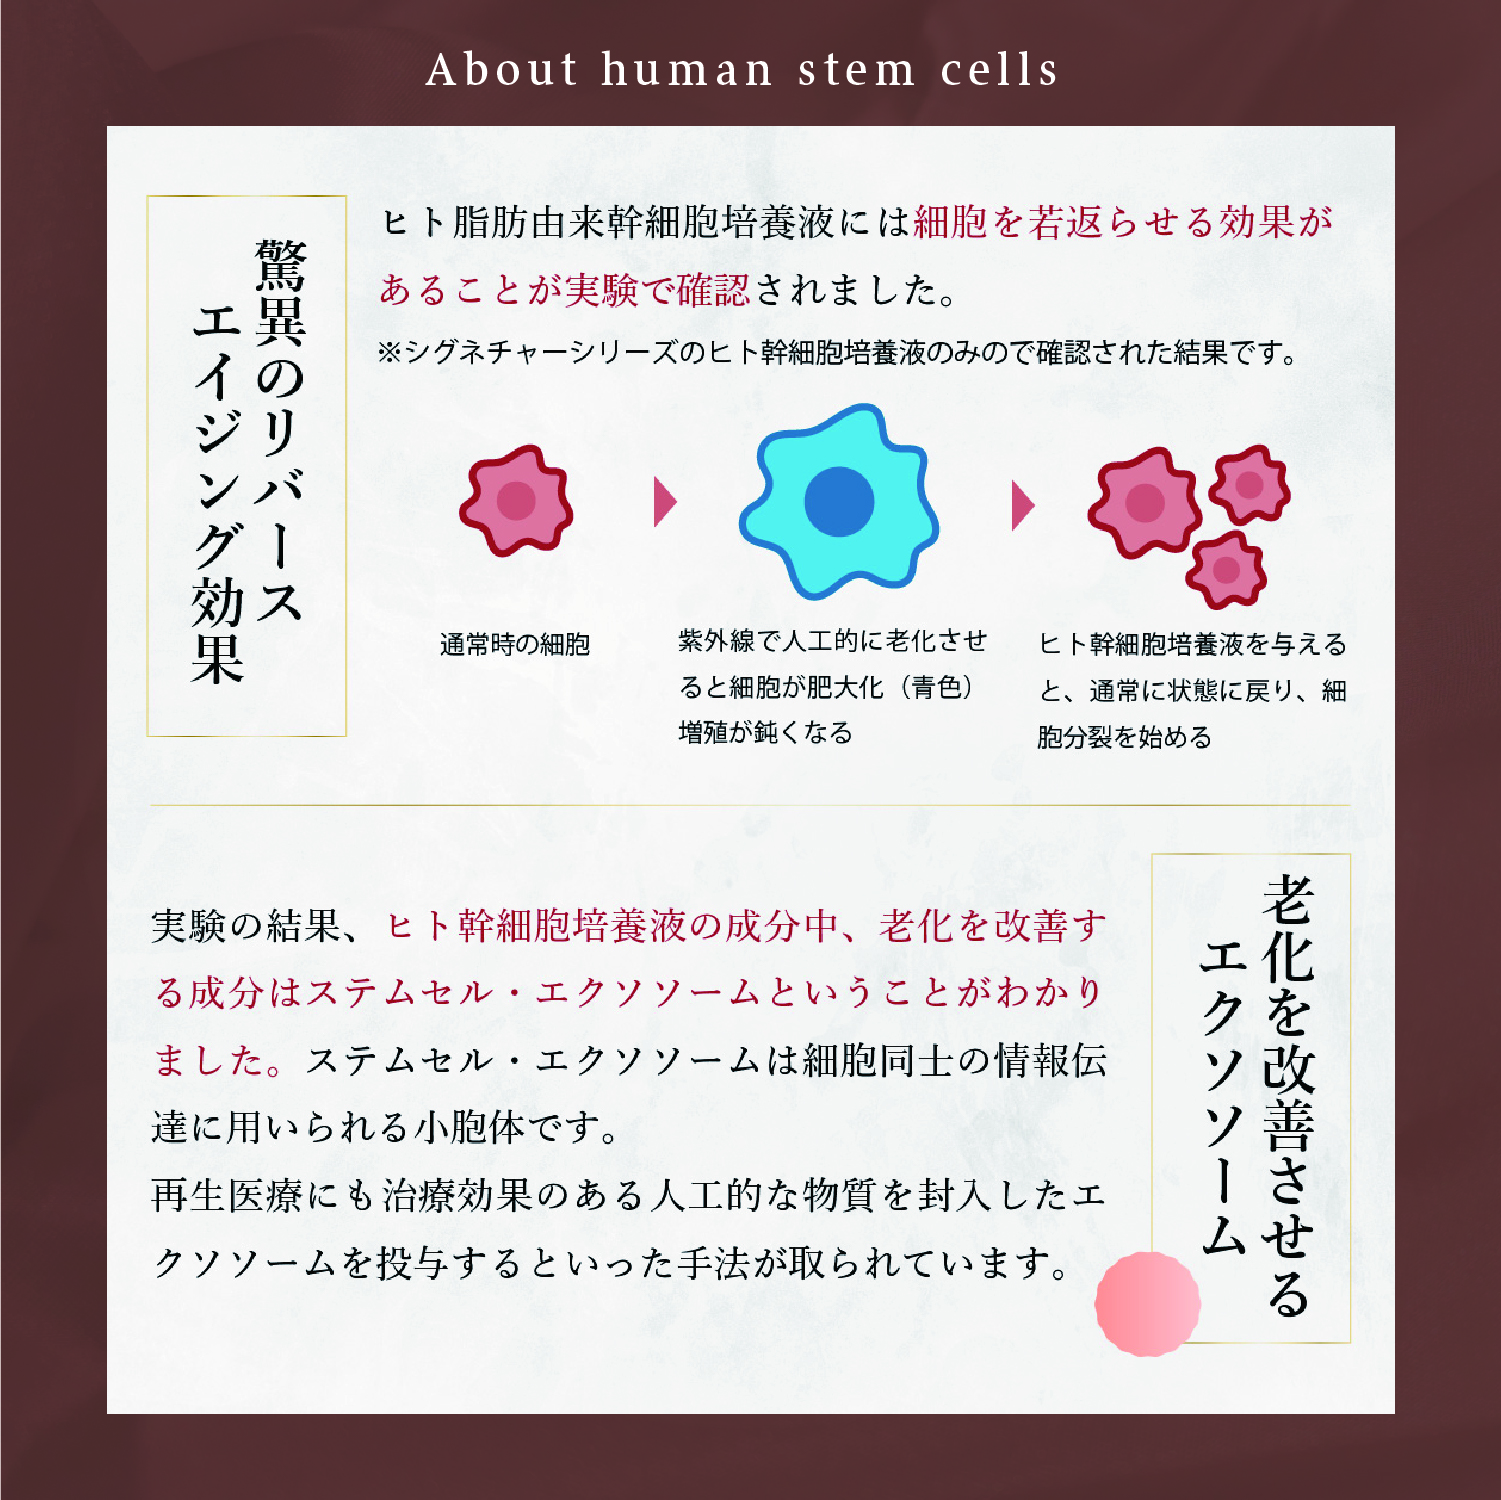 ヒト幹細胞の説明